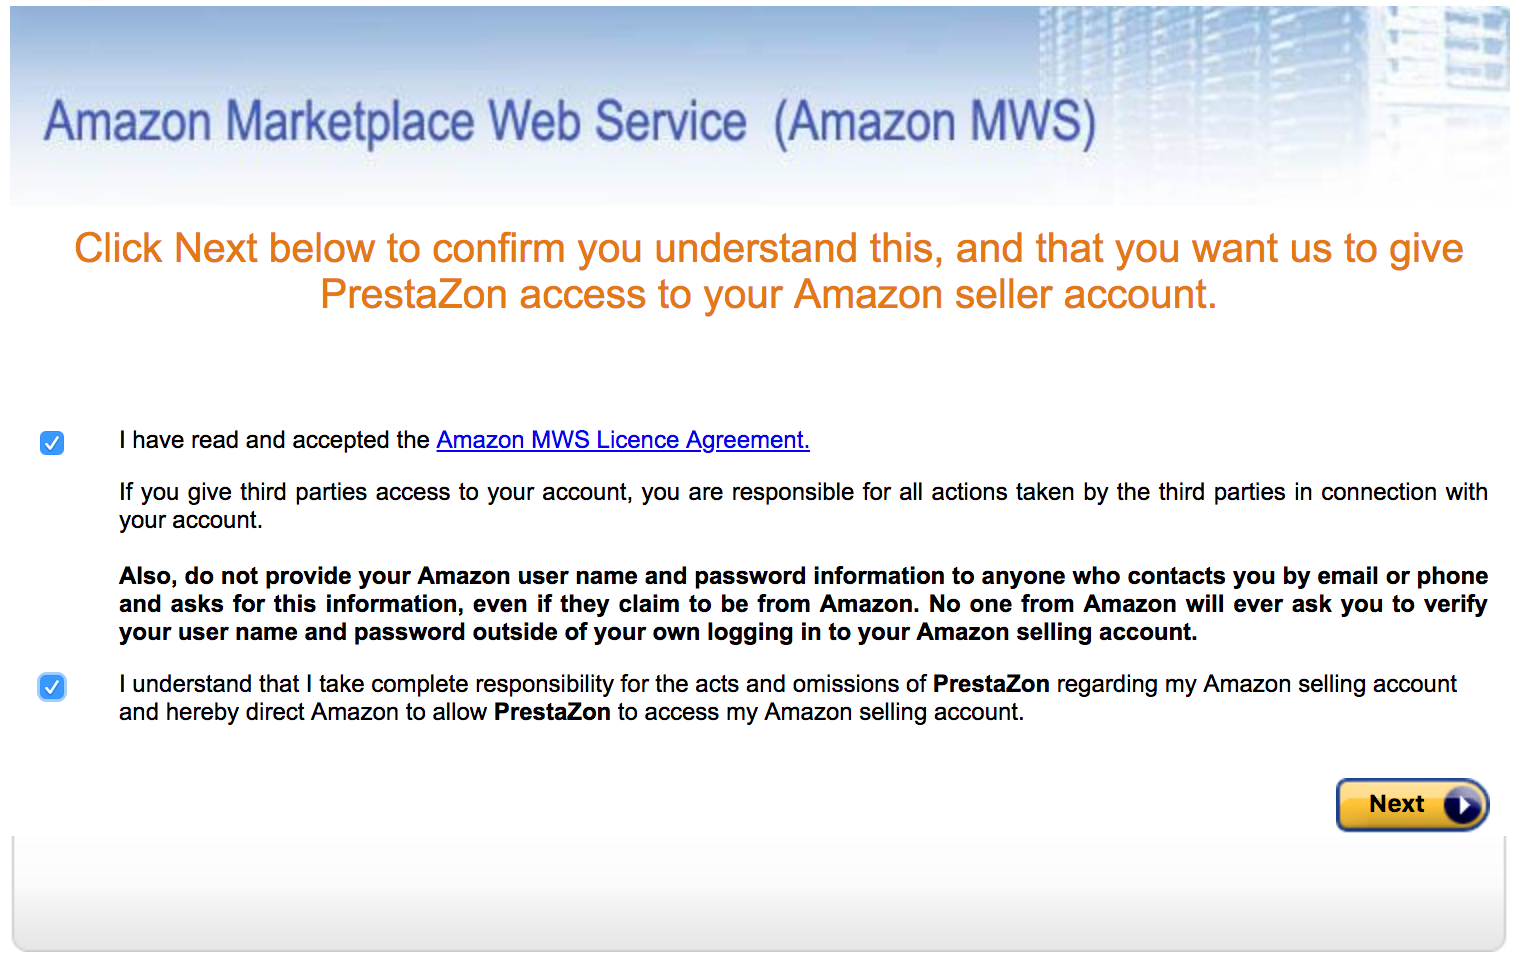 PrestaShop Amazon module — Adding your Amazon Account